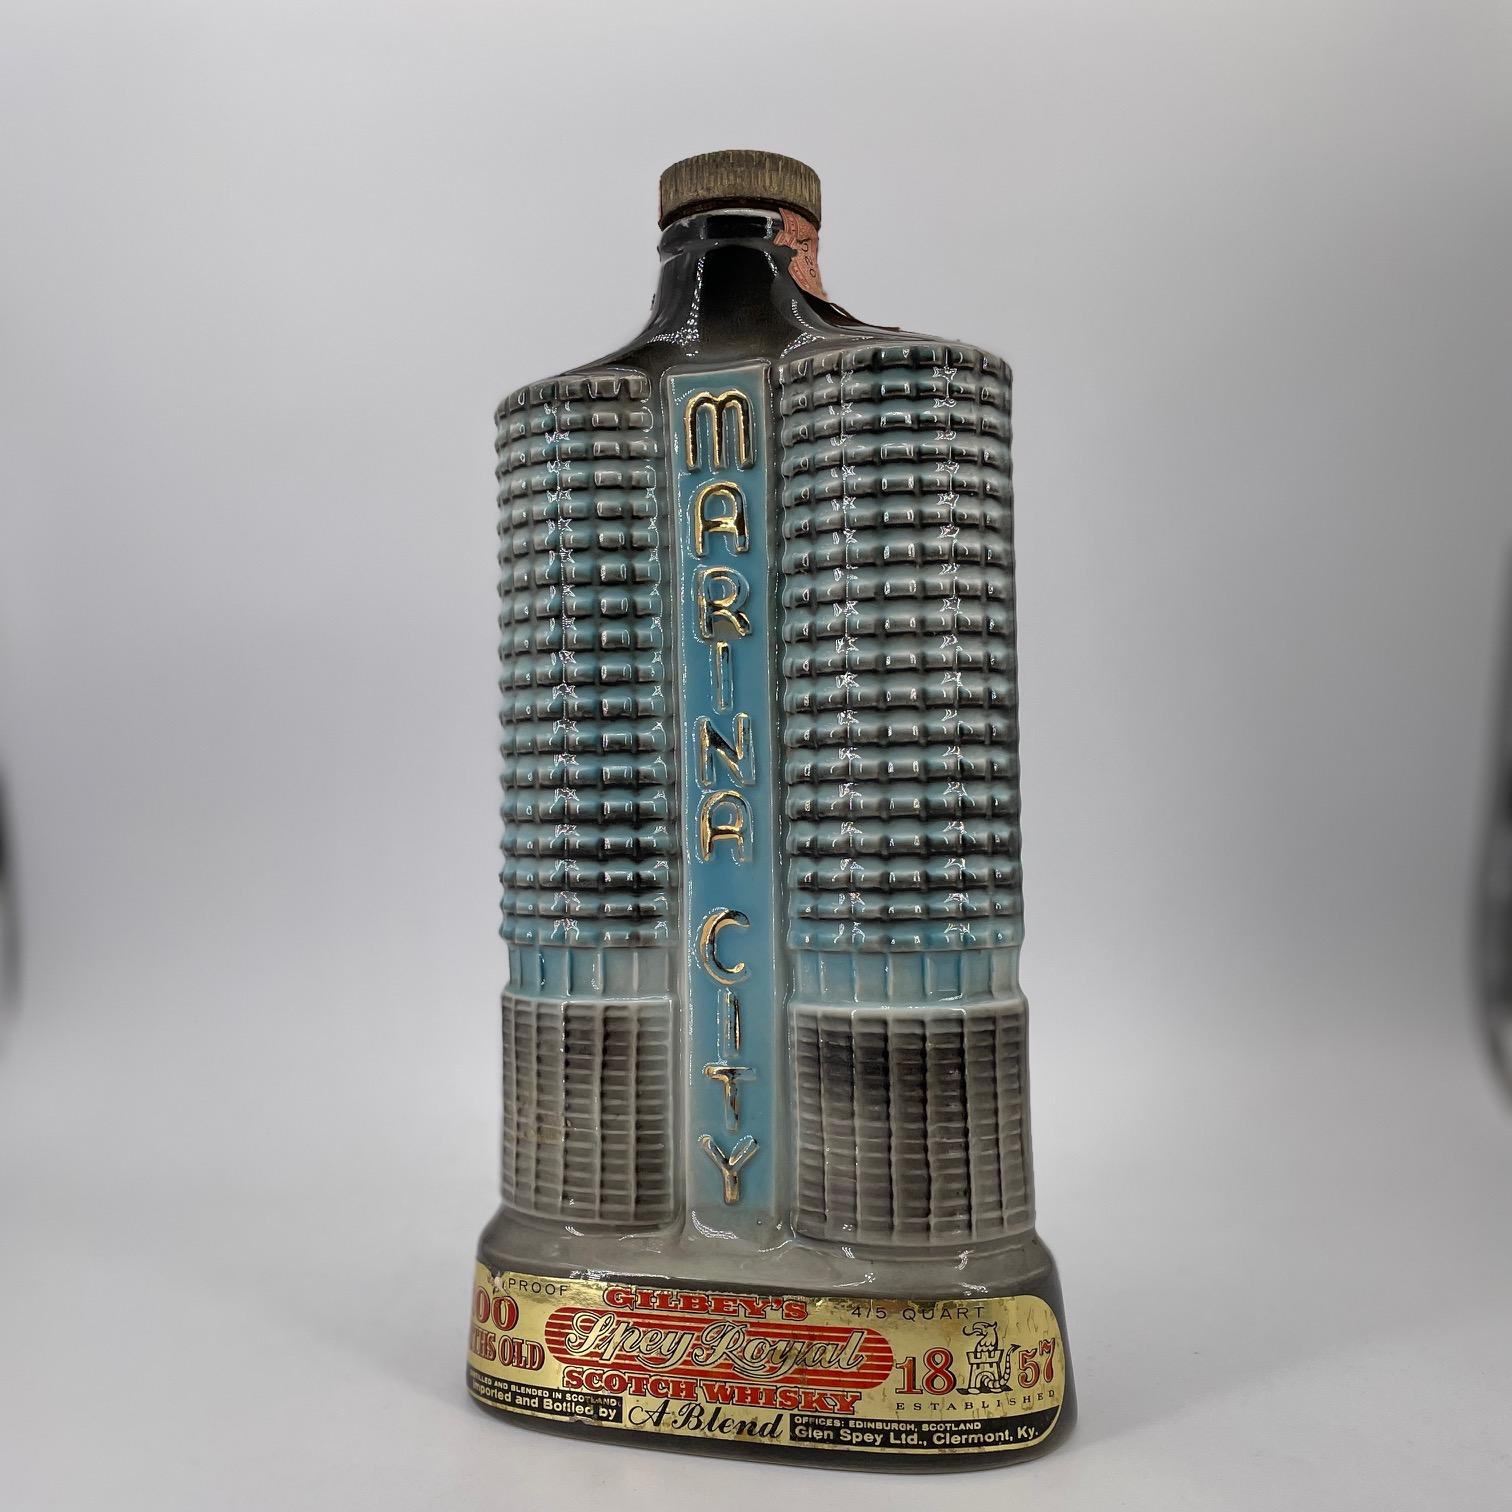 Un magnifique objet de décoration, une maquette rétro de l'horizon de Chicago, difficile à trouver, représentant les célèbres tours de Marina City.  Signé, numéroté, daté de 1962, C.Miller pour J.B. Poutre, etc.etc. dans le moule, voir l'image du